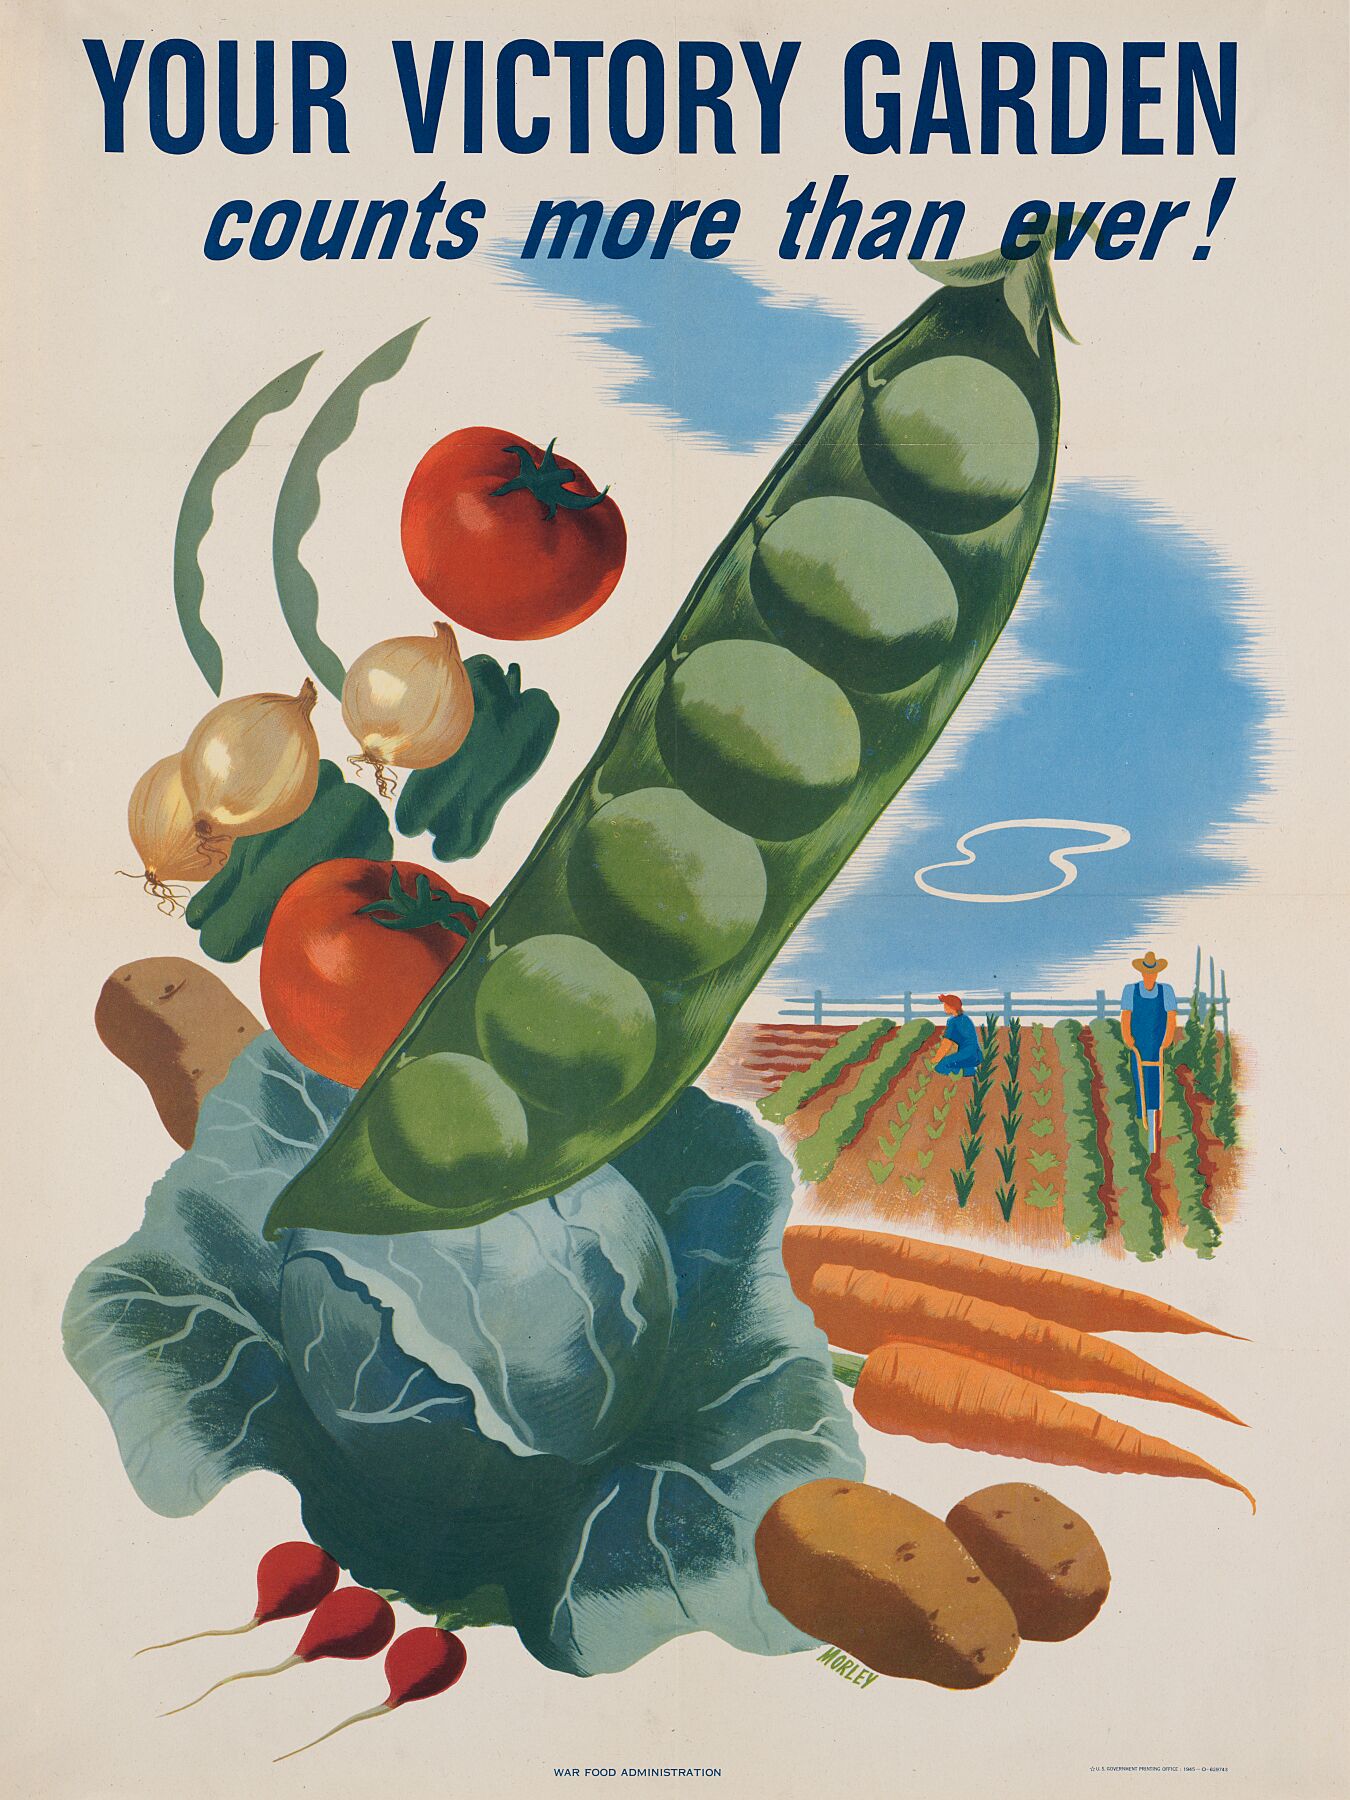 Your Victory Garden Morley by Hubert Sponsor - 1945